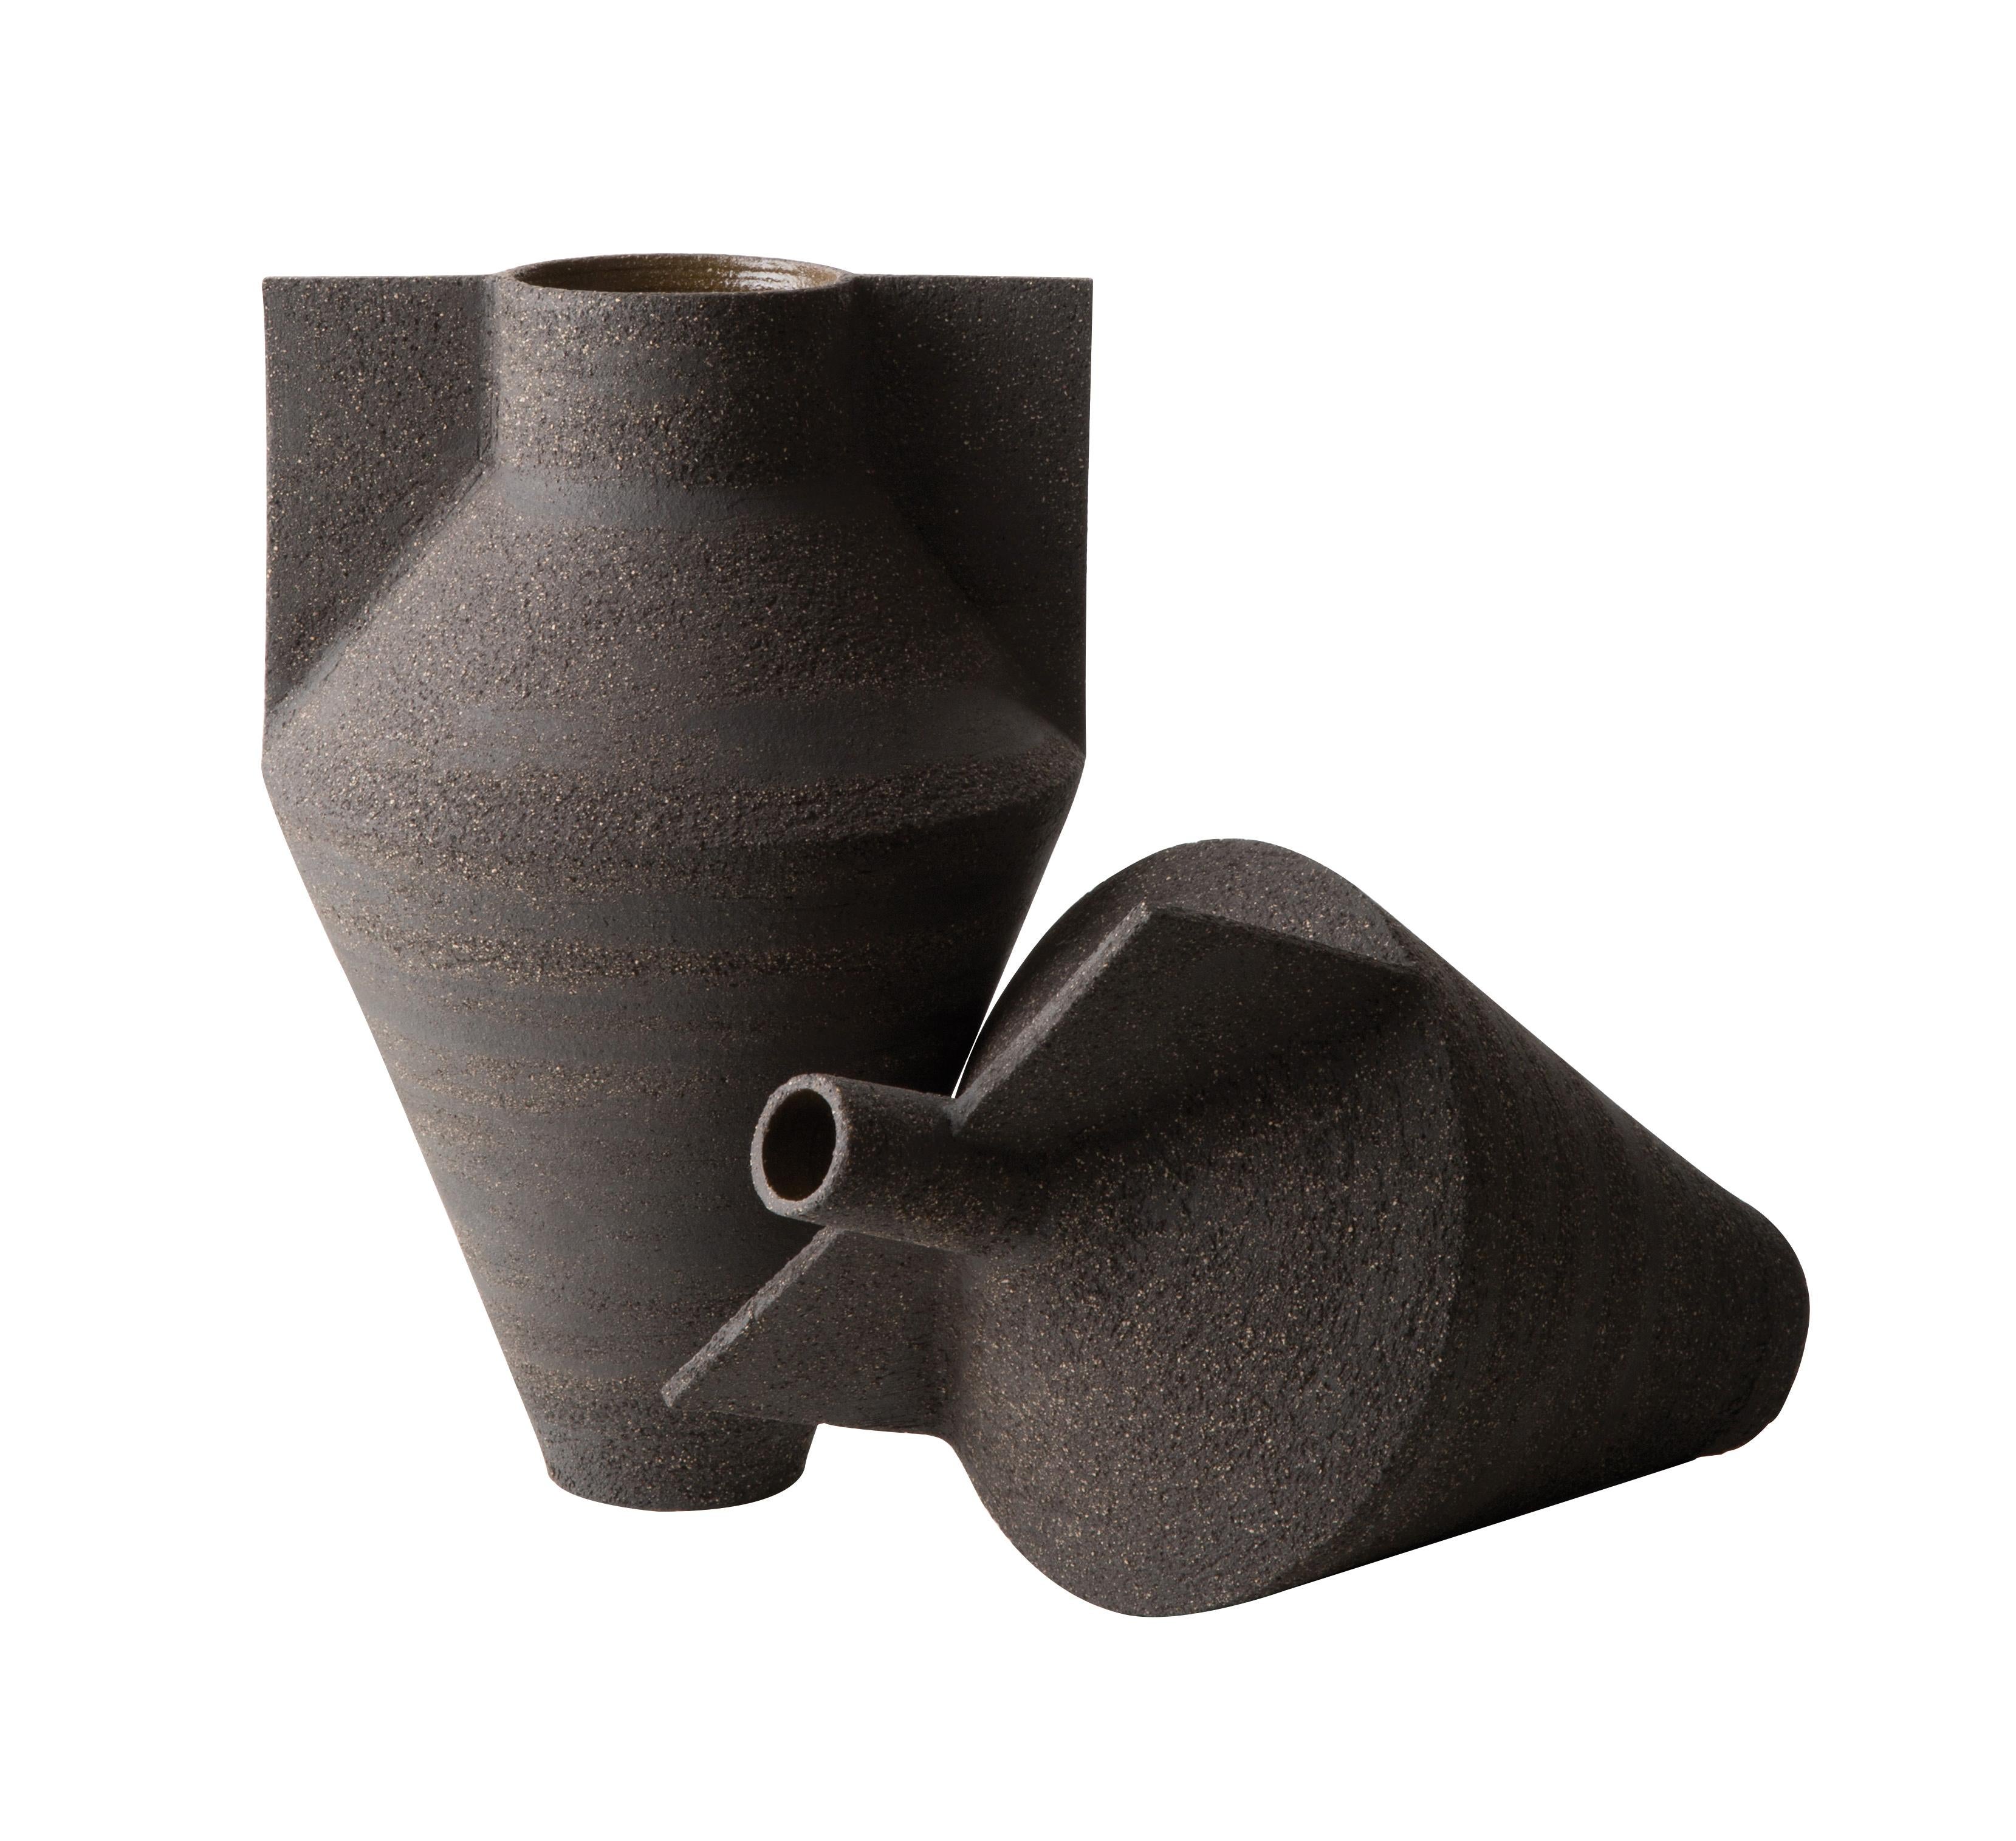 Caractérisés par des lignes épurées et une fabrication artisanale, les vases Jana constituent une collection conçue pour Cappellini par Antonio Forteleoni. Ces vases sont fabriqués en terre noire, forgés à la main sur un tour de potier, et sont